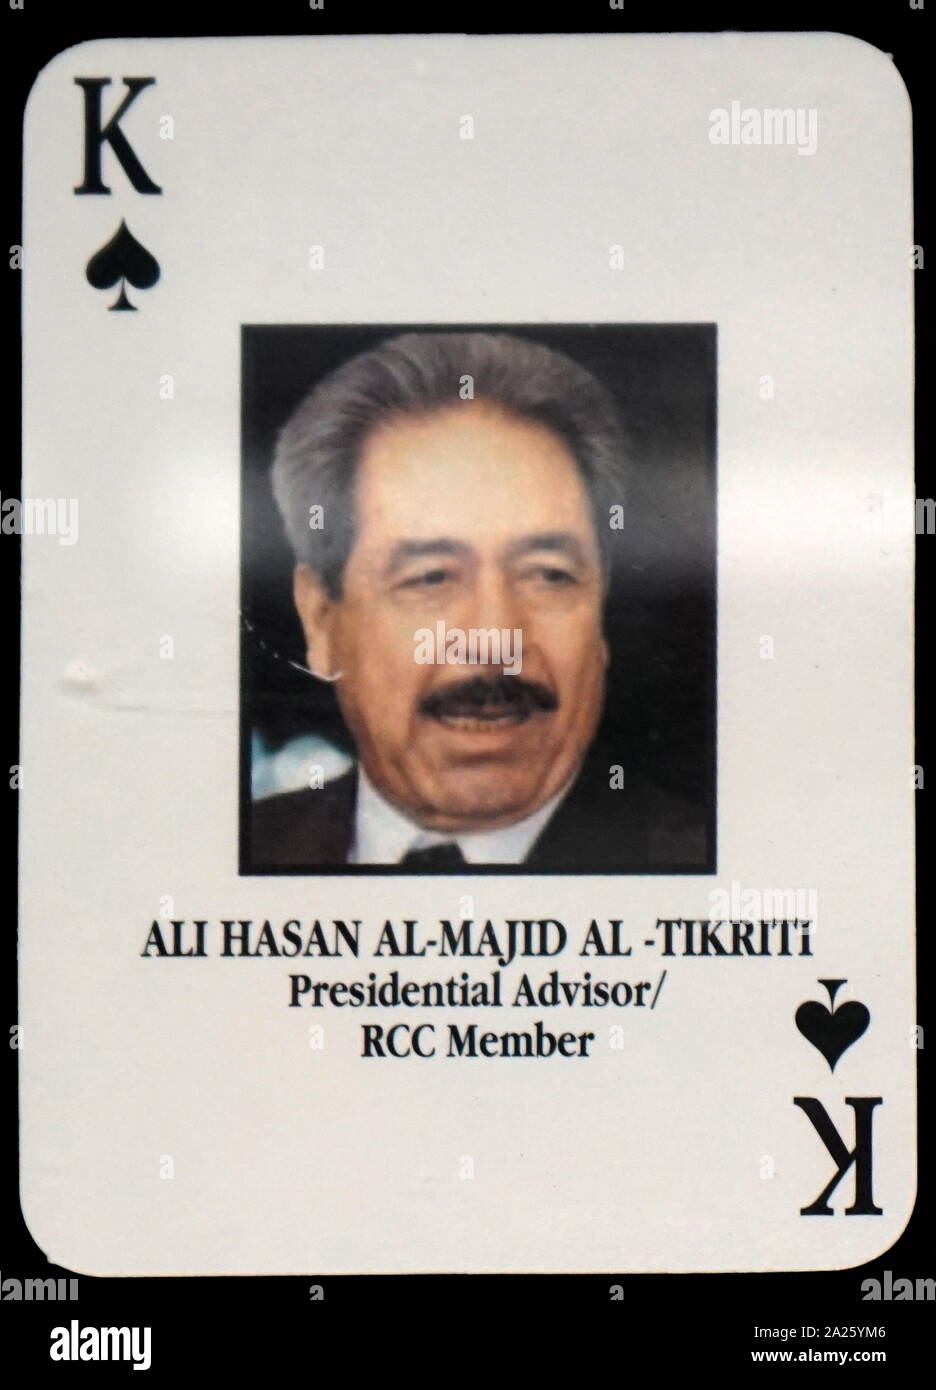 Die meisten - wollte irakische Spielkarten - Ali Hasan Al-Majid Al-Tikriti (Berater des Präsidenten/RCC-Mitglied). Das US-Militär entwickelte eine Reihe von Spielkarten zu helfen Truppe die meisten - die Mitglieder von Präsident Saddam Husseins Regierung während der Invasion 2003 im Irak zu identifizieren. Stockfoto